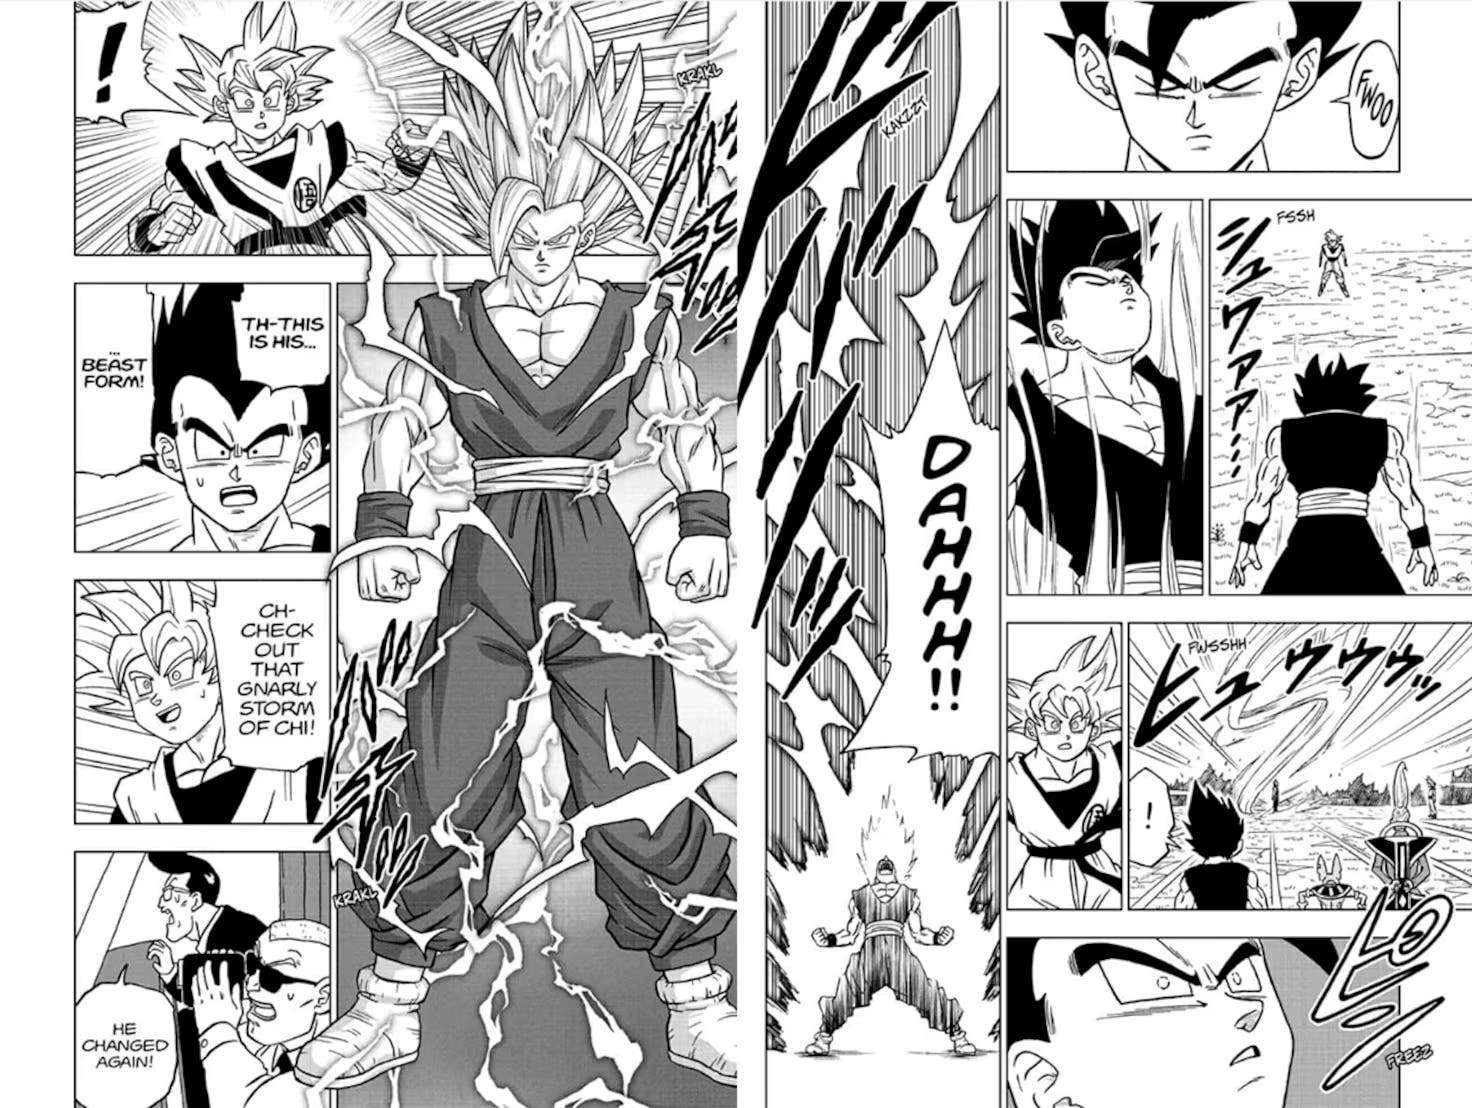 Dragon Ball Super: La pelea de Goku y Gohan determina al guerrero más fuerte del universo